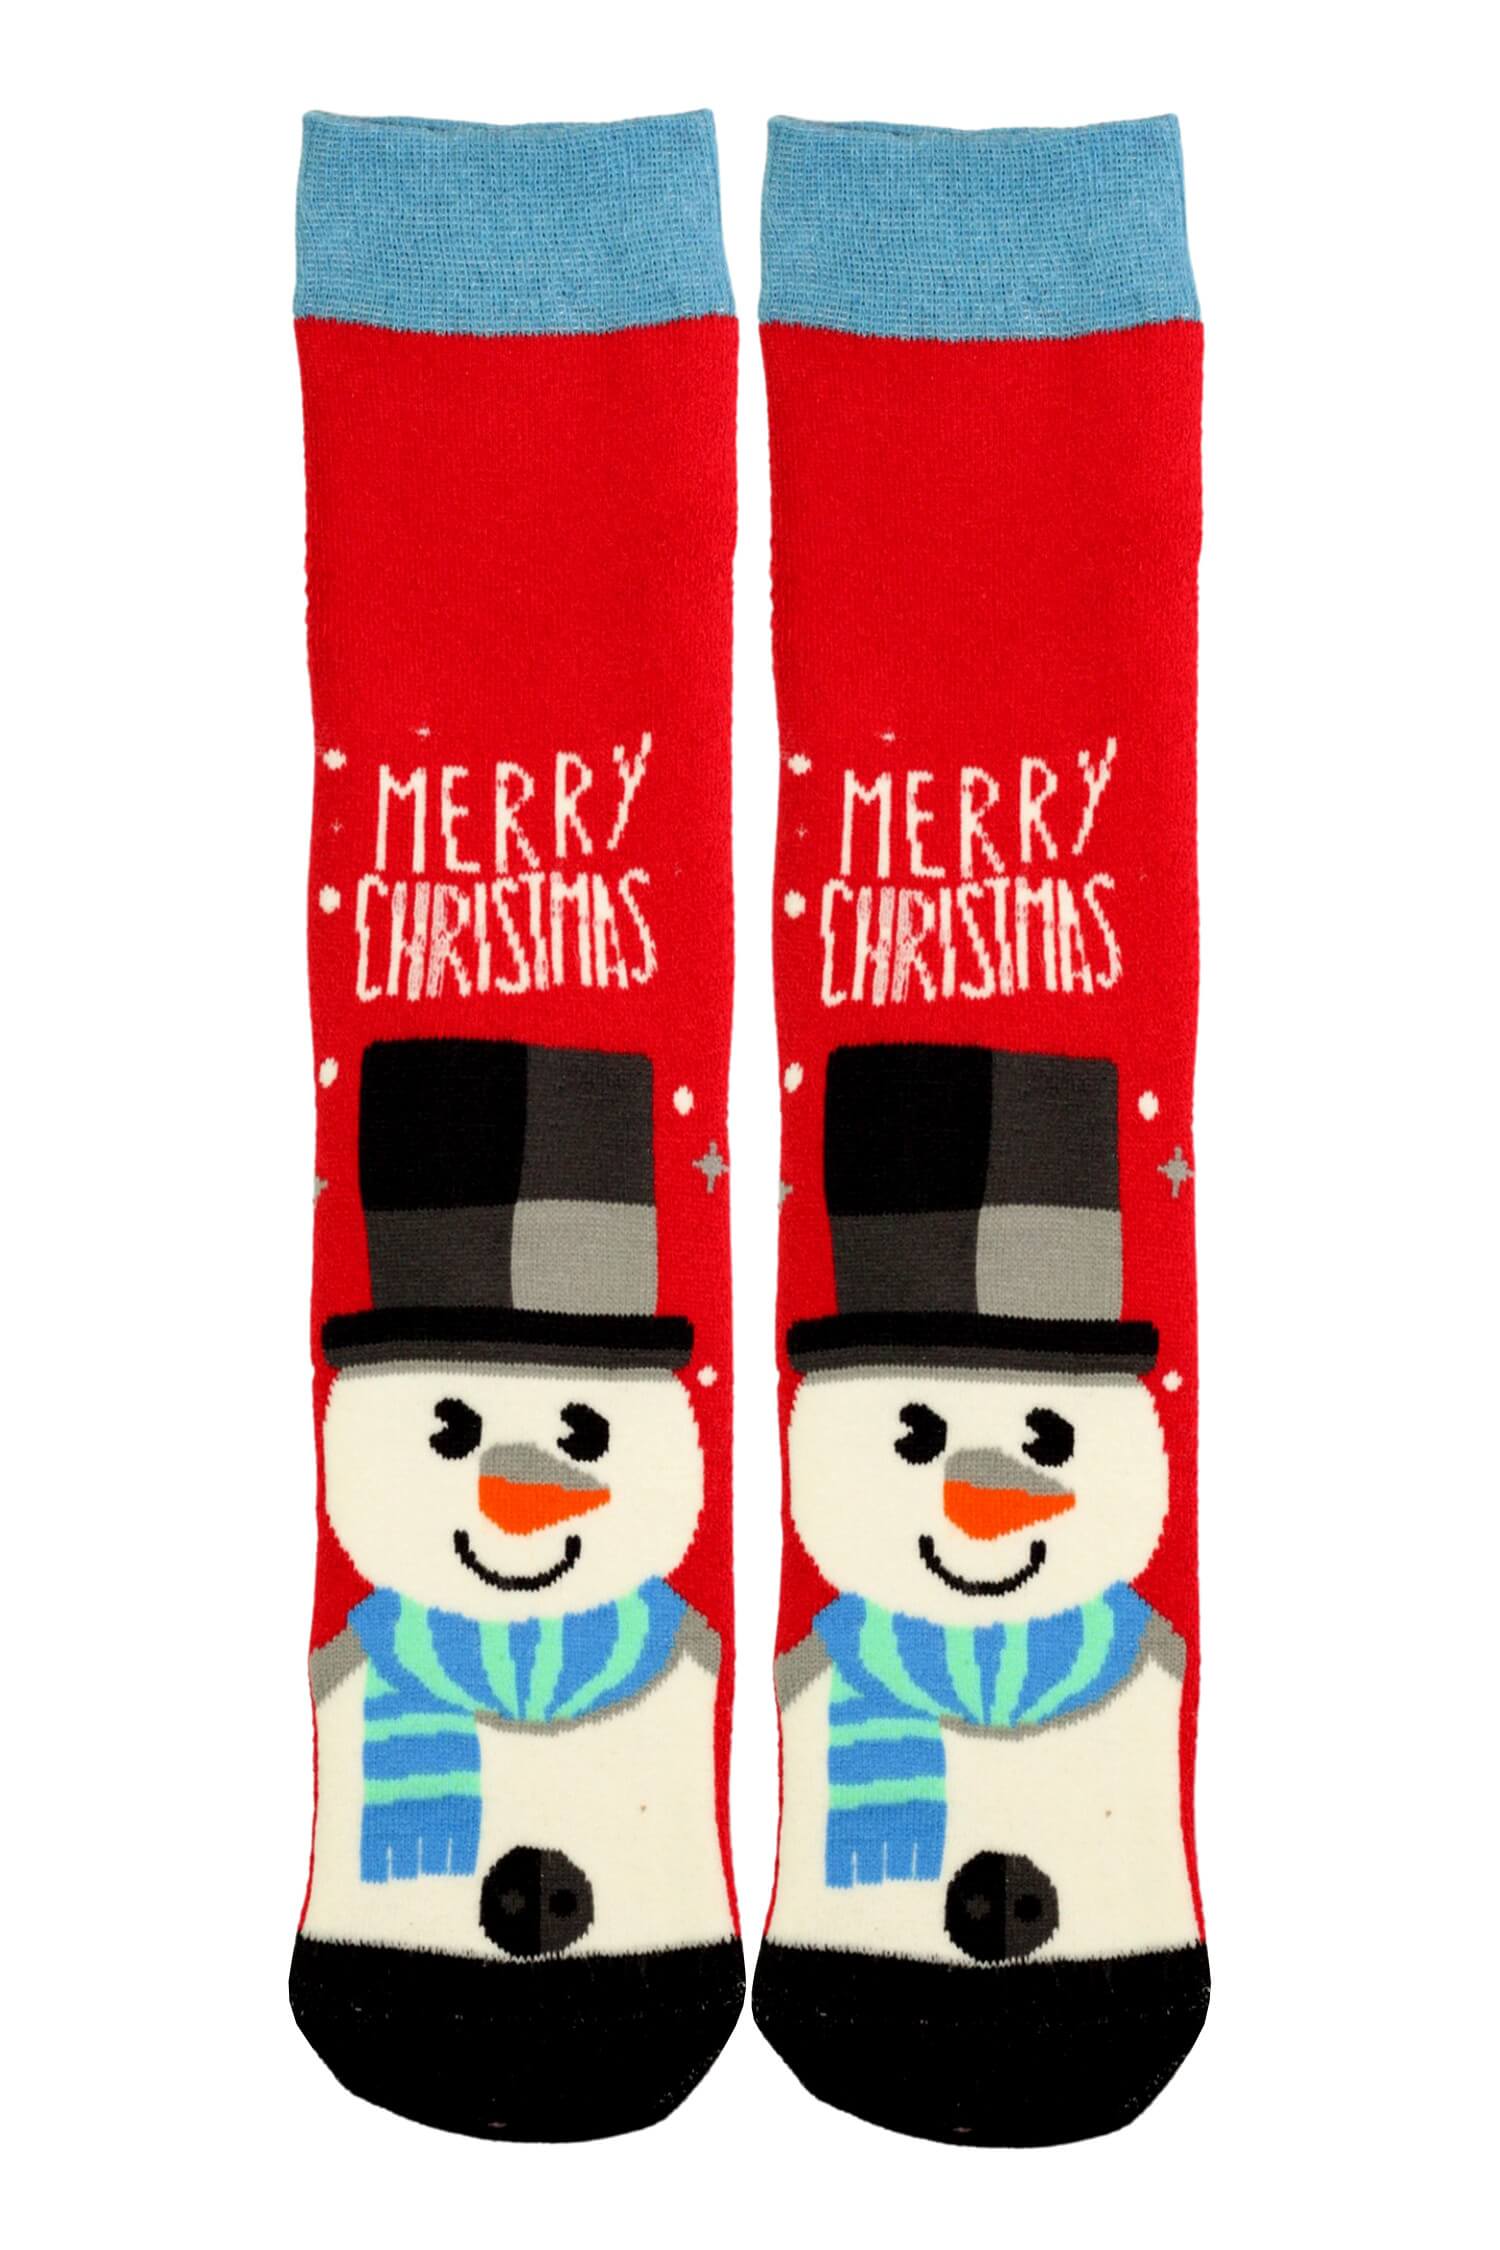 Virgina vánoční termo ponožky dámské sněhulák 39-42 červená